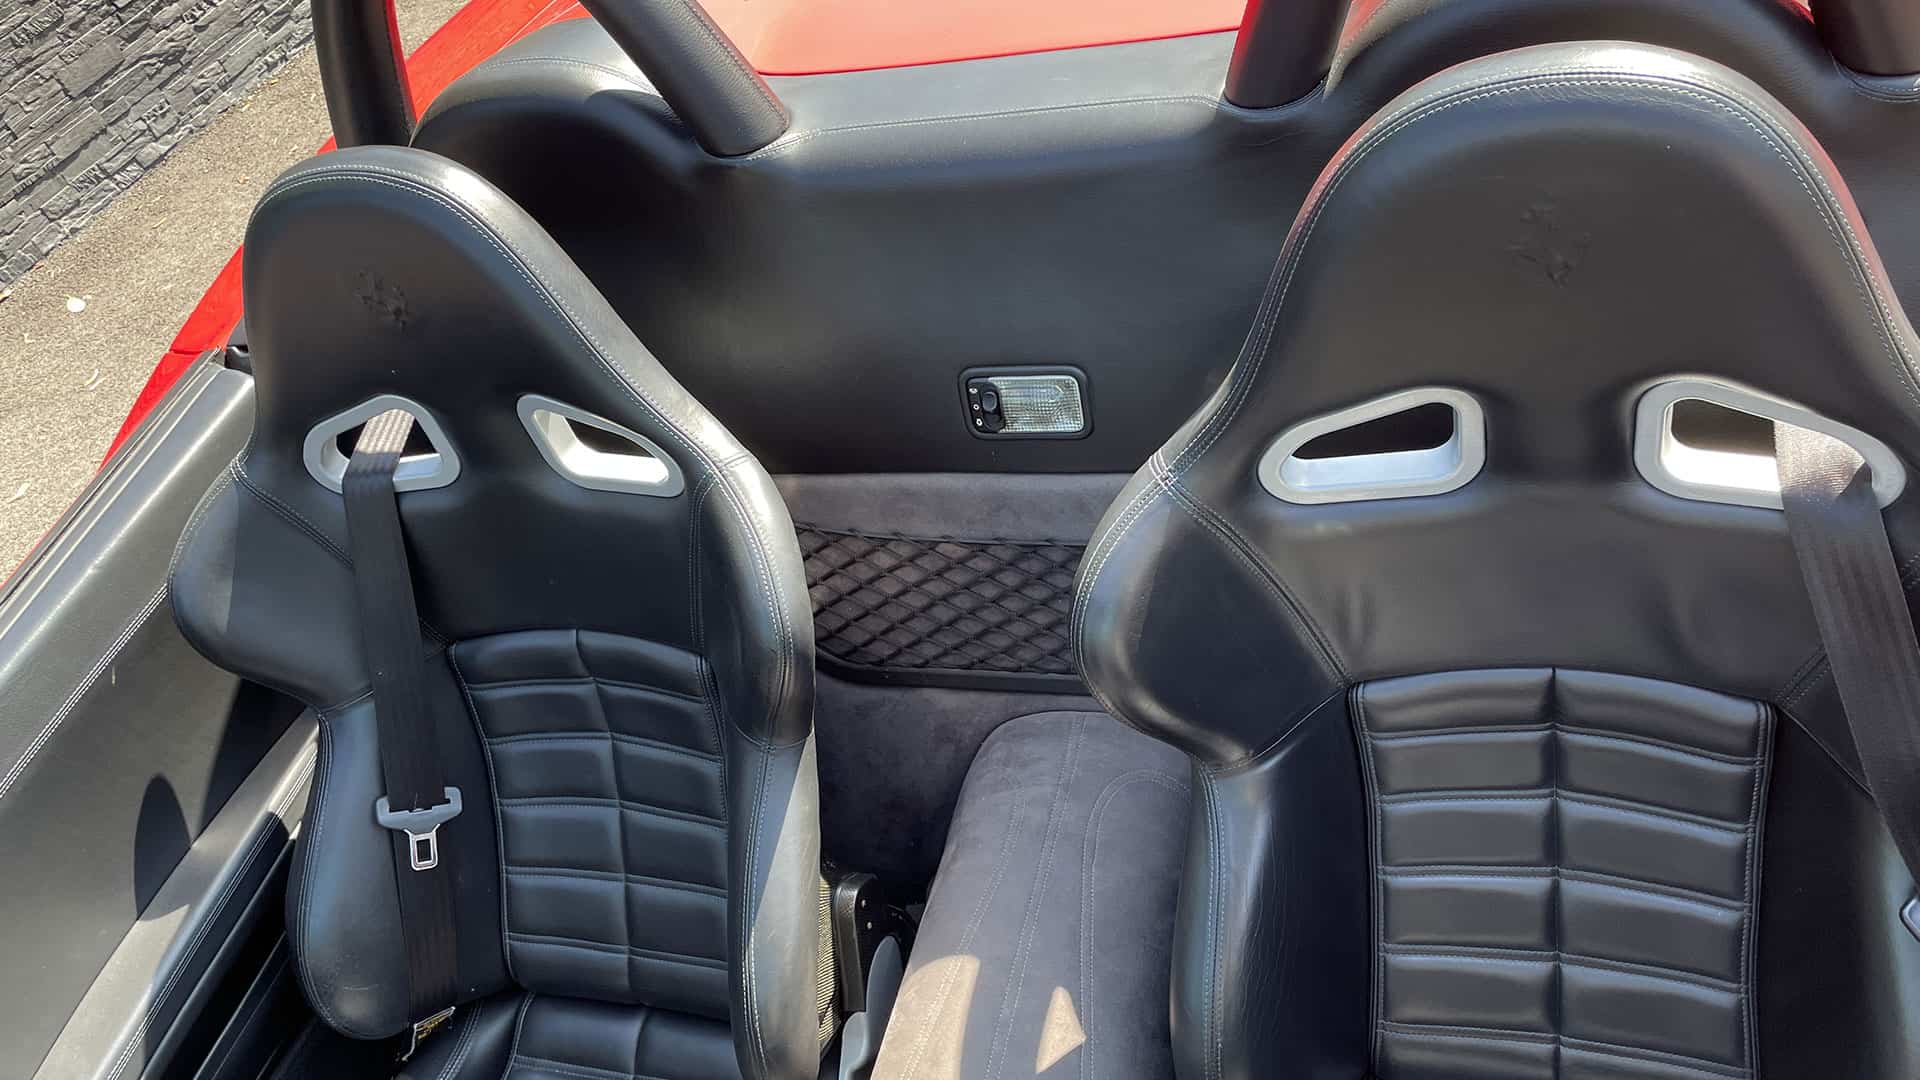 Seats of the Ferrari 550 Barchetta